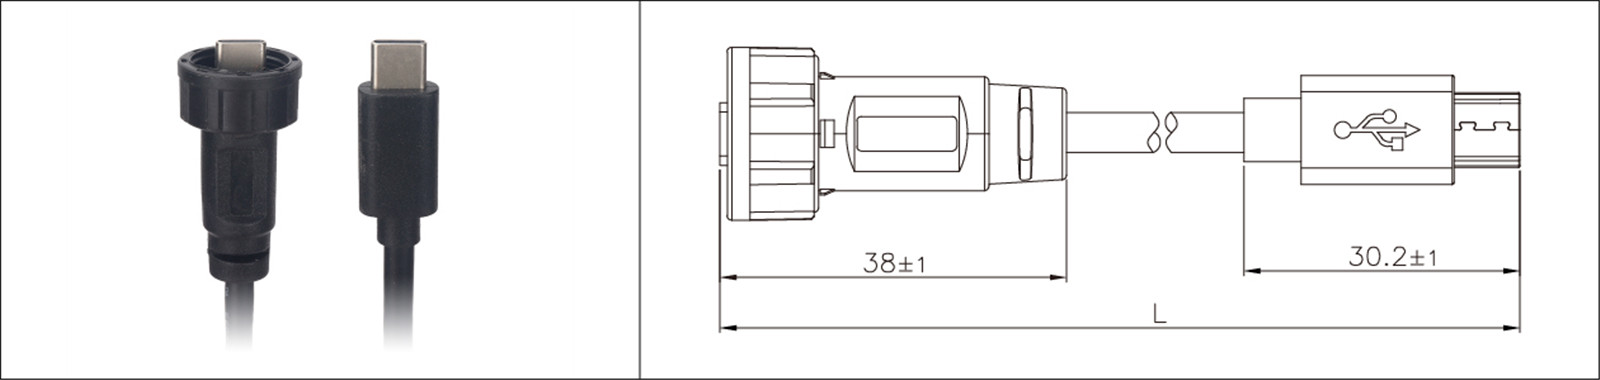 Micro USB վահանակի ամրացման տեսակ 2.0 3.0 իգական և արական անջրանցիկ IP67 overmold երկարացման մալուխ արդյունաբերական միակցիչ-02 (7)